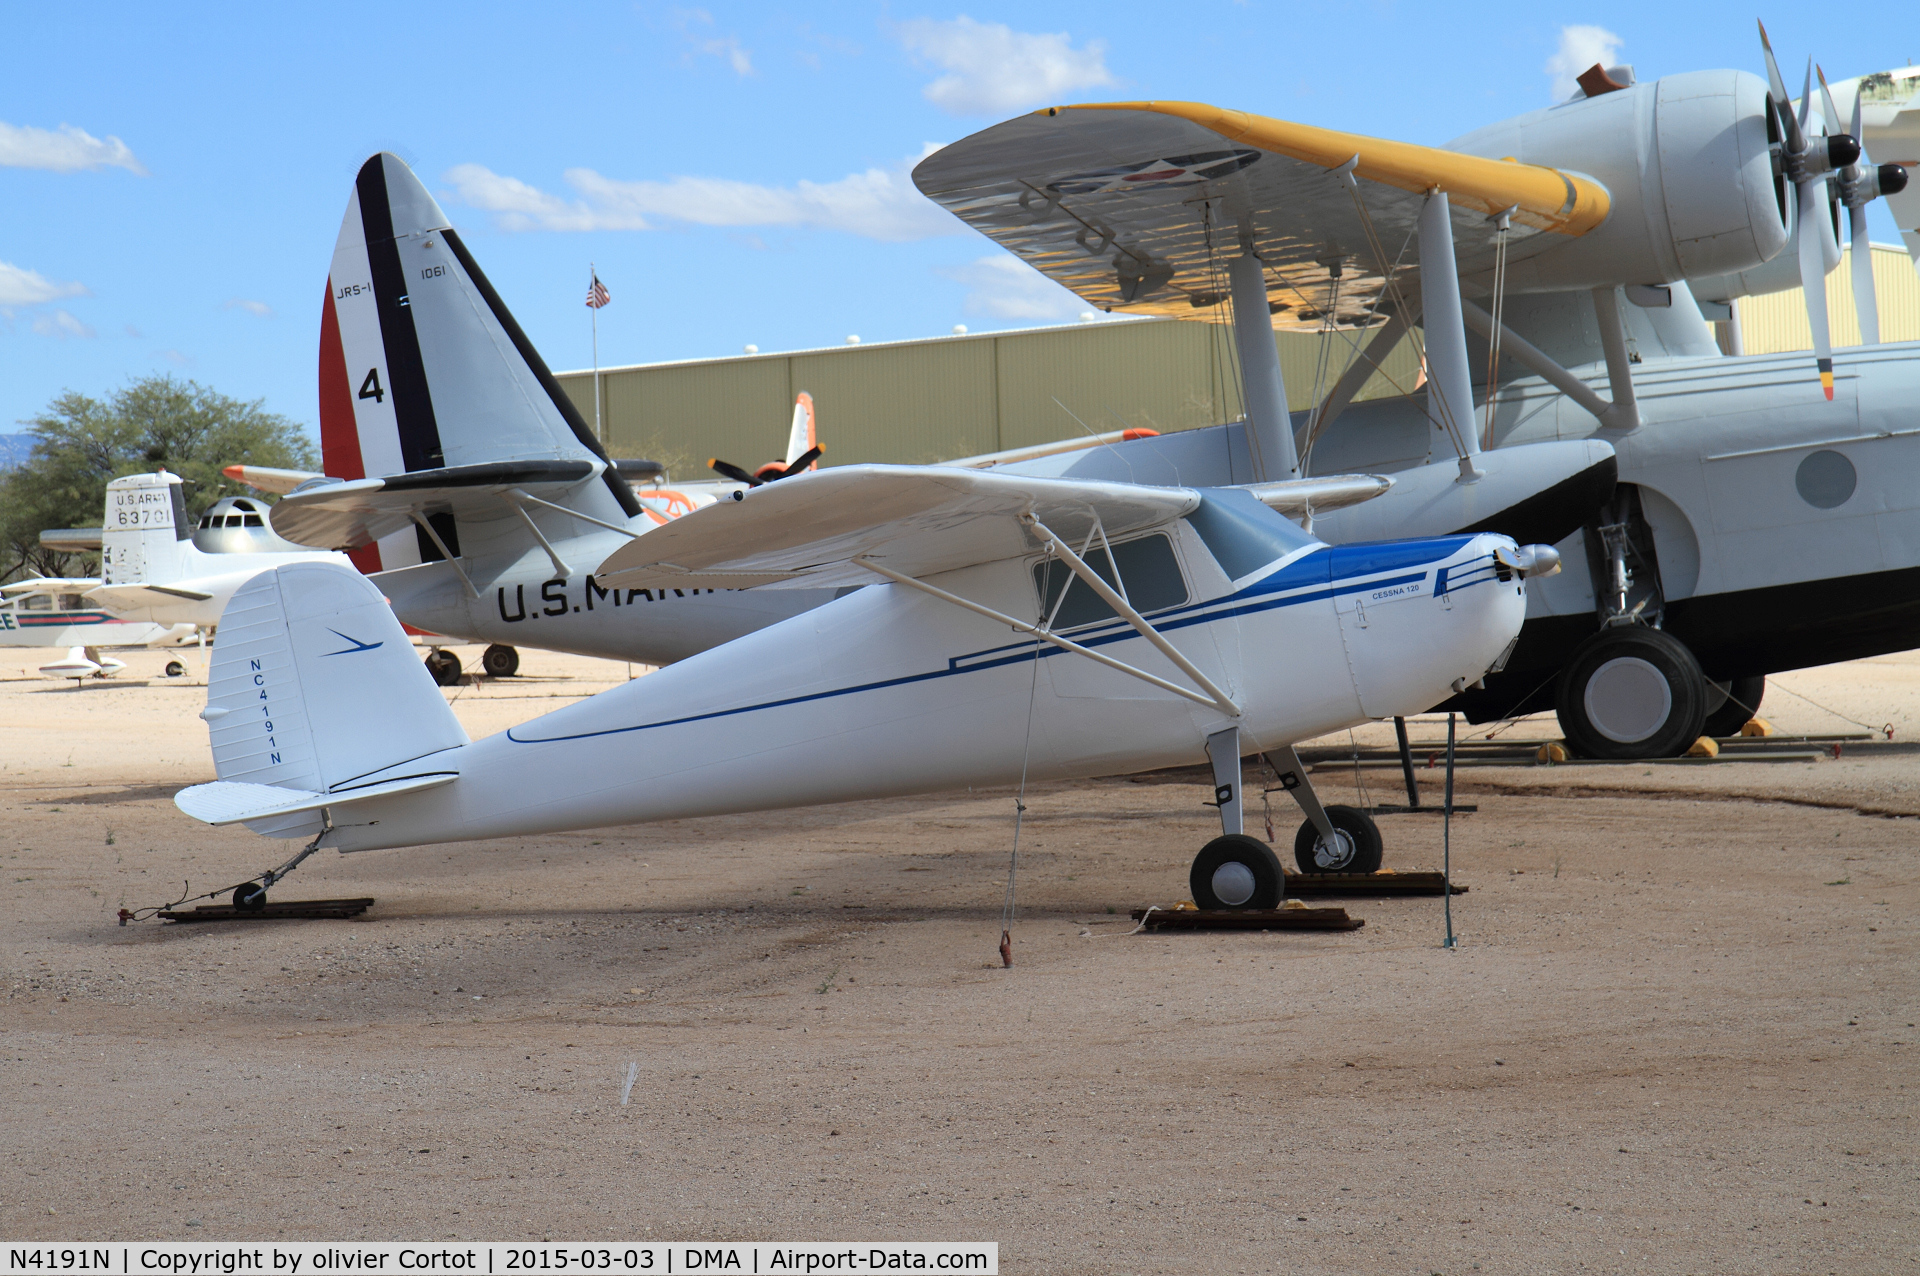 N4191N, 1947 Cessna 120 C/N 13662, Pima museum